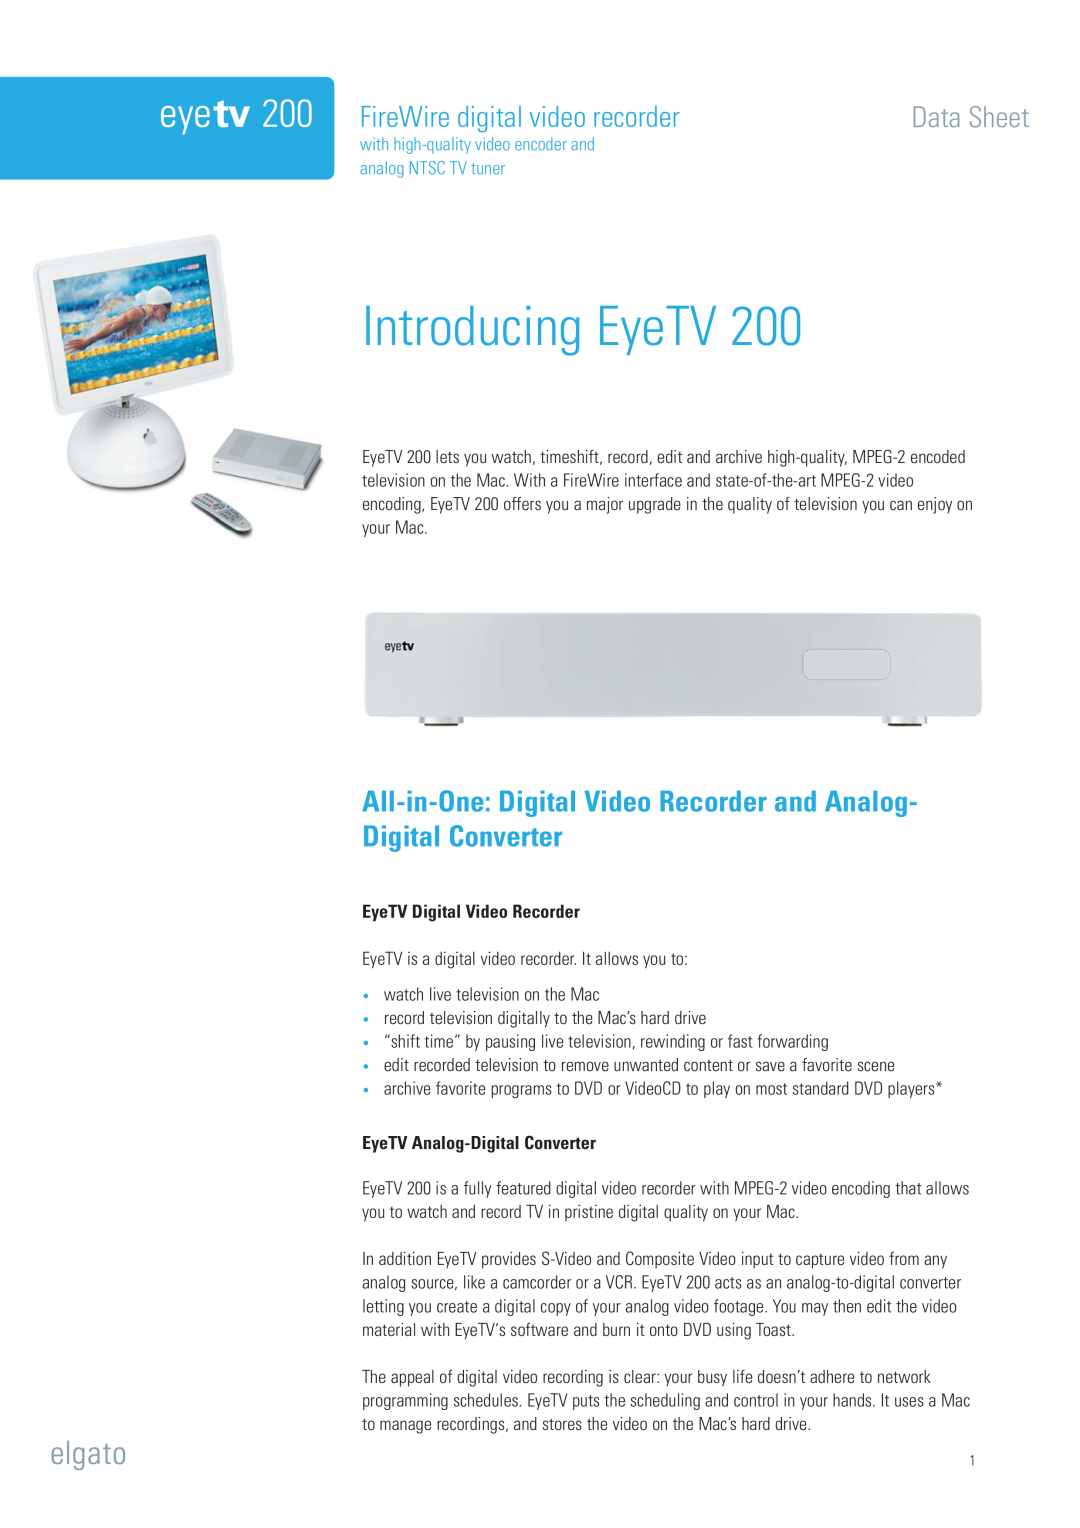 Elgato EyeTV 200 manual Introducing EyeTV, ˆÀi7ˆÀiÊ`ˆˆÌÊÛˆ`iœÊÀiVœÀ`iÀÌÊ-…iiÌ, EyeTV Digital Video Recorder 